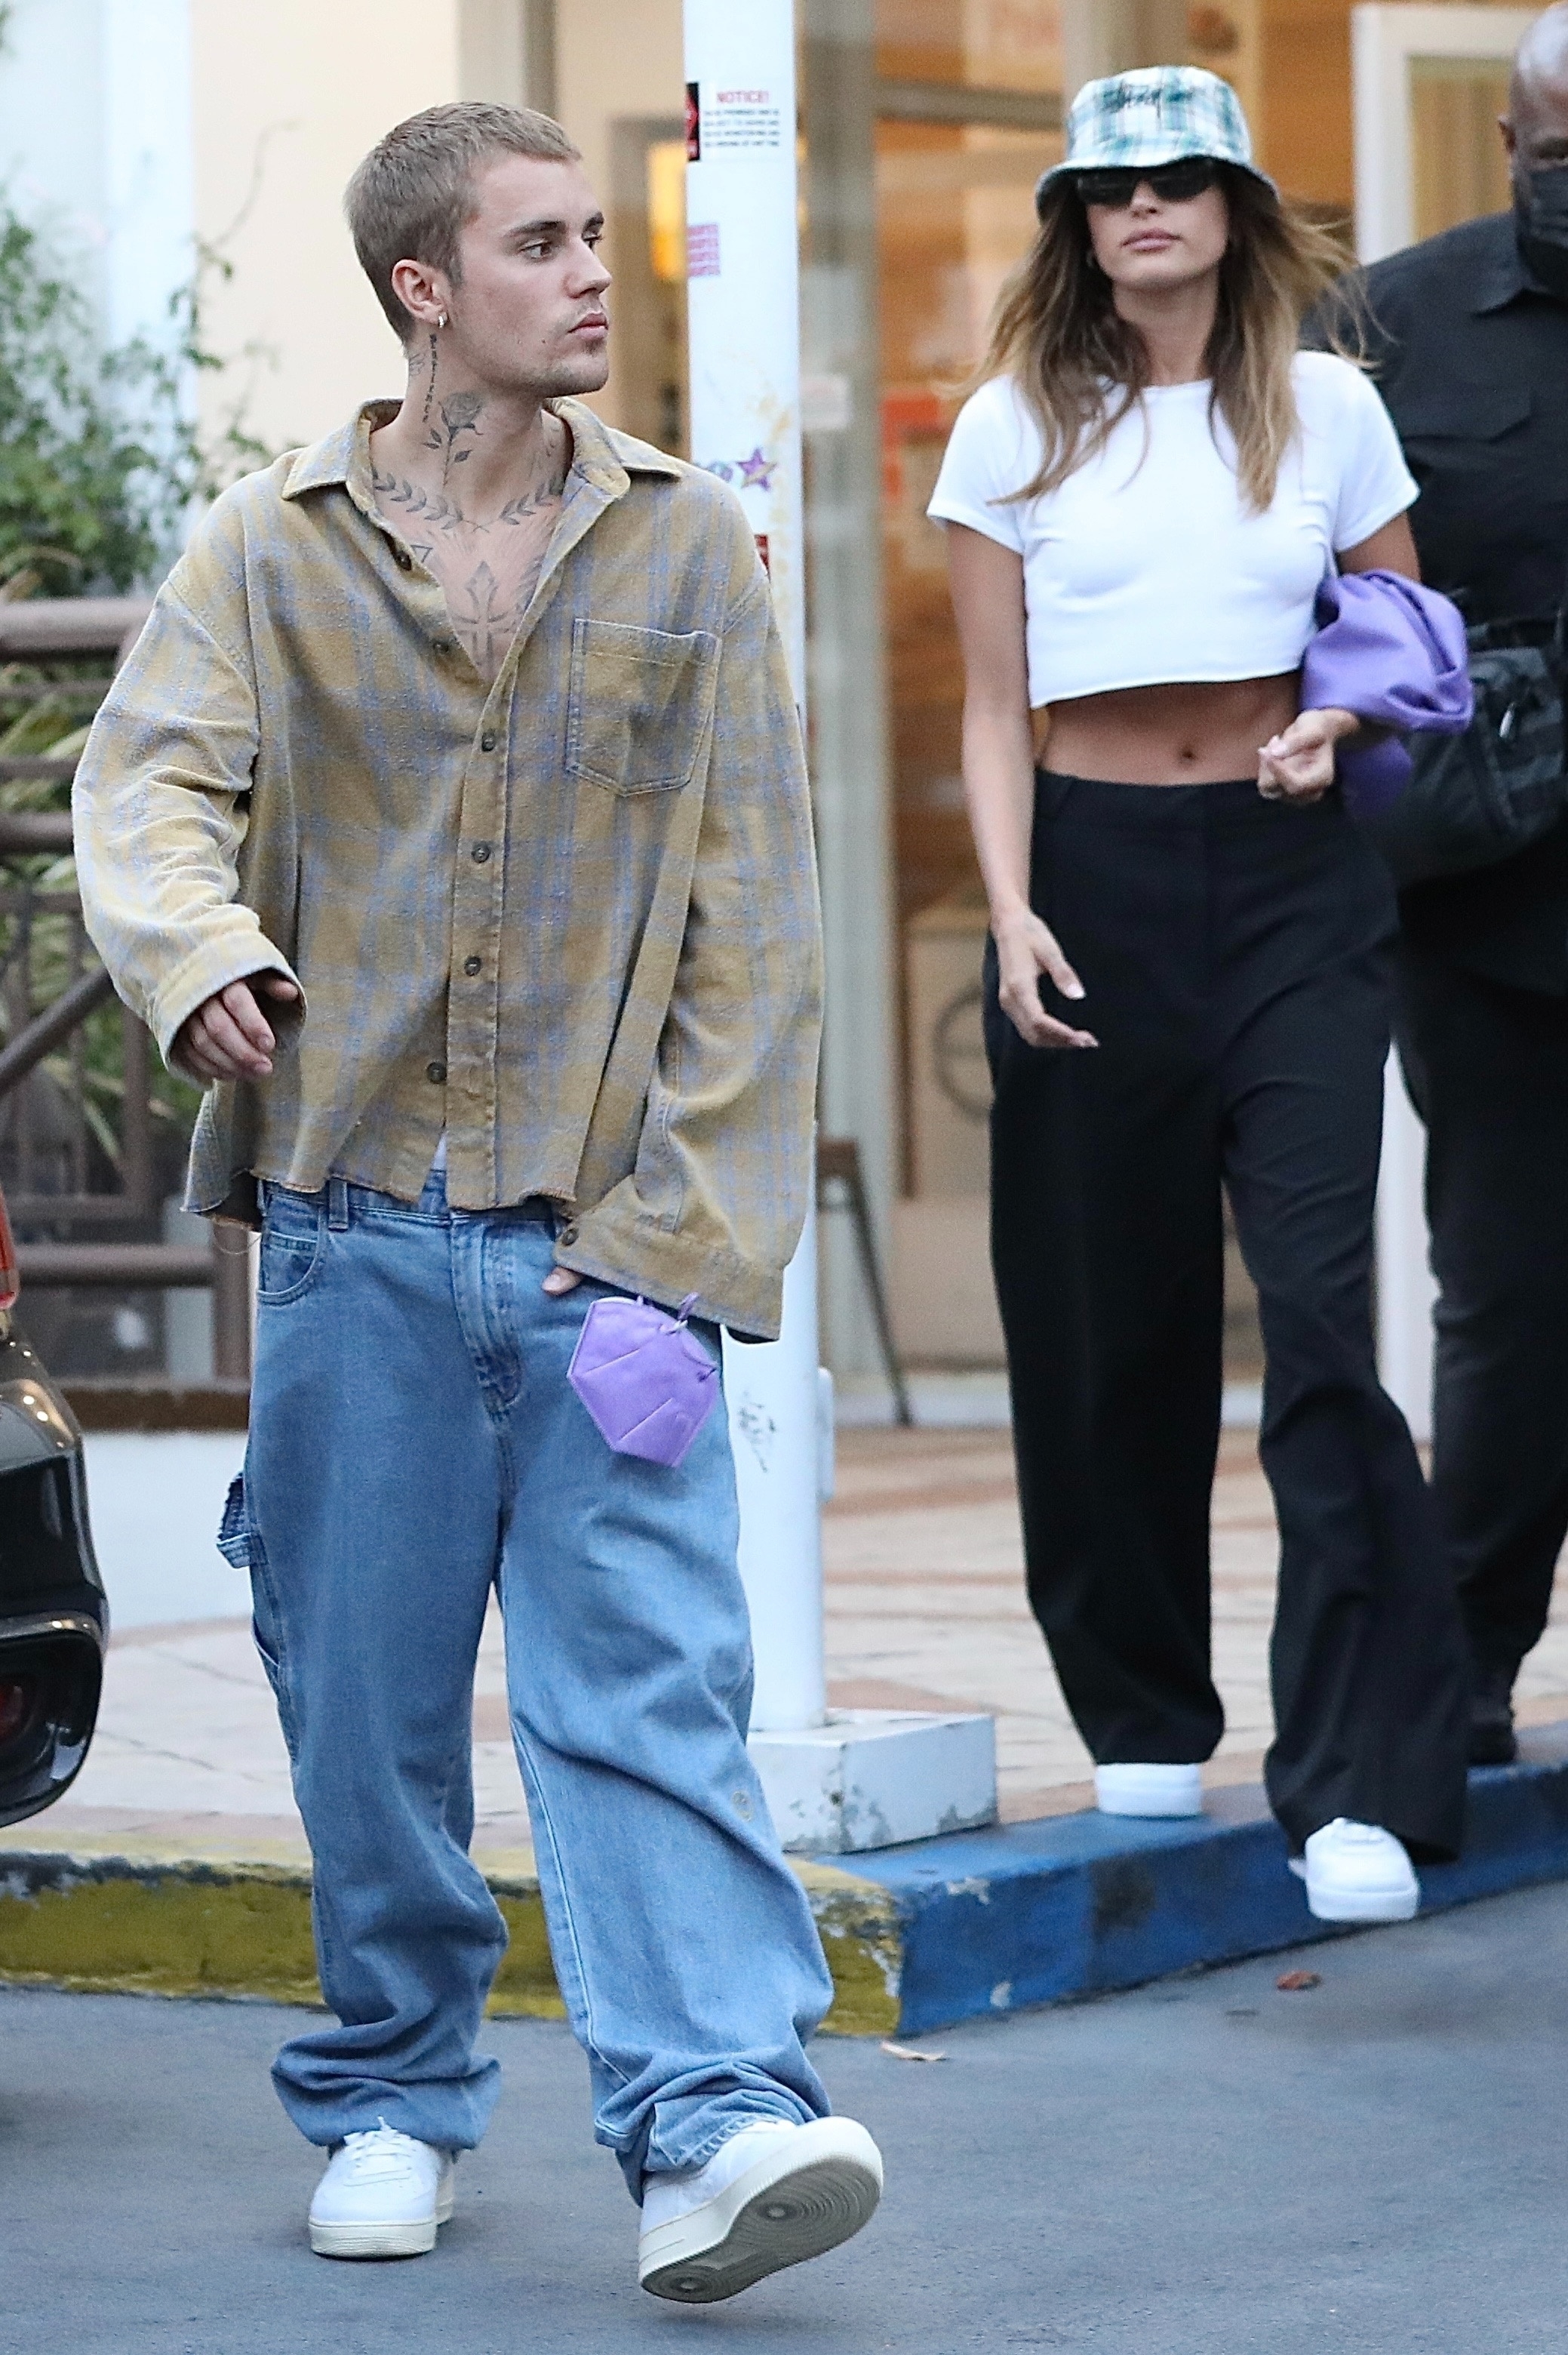 Cita romántica. Justin Bieber y su esposa, Hailey, fueron a comer al exclusivo restaurante Sushi Park en West Hollywood. El cantante vistió un jean y una camisa marrón con detalles amarillos, mientras que la modelo optó por un pantalón negro tiro alto, una remera blanca. Además, llevó un gorro a cuadros y cartera de cuero color lila 